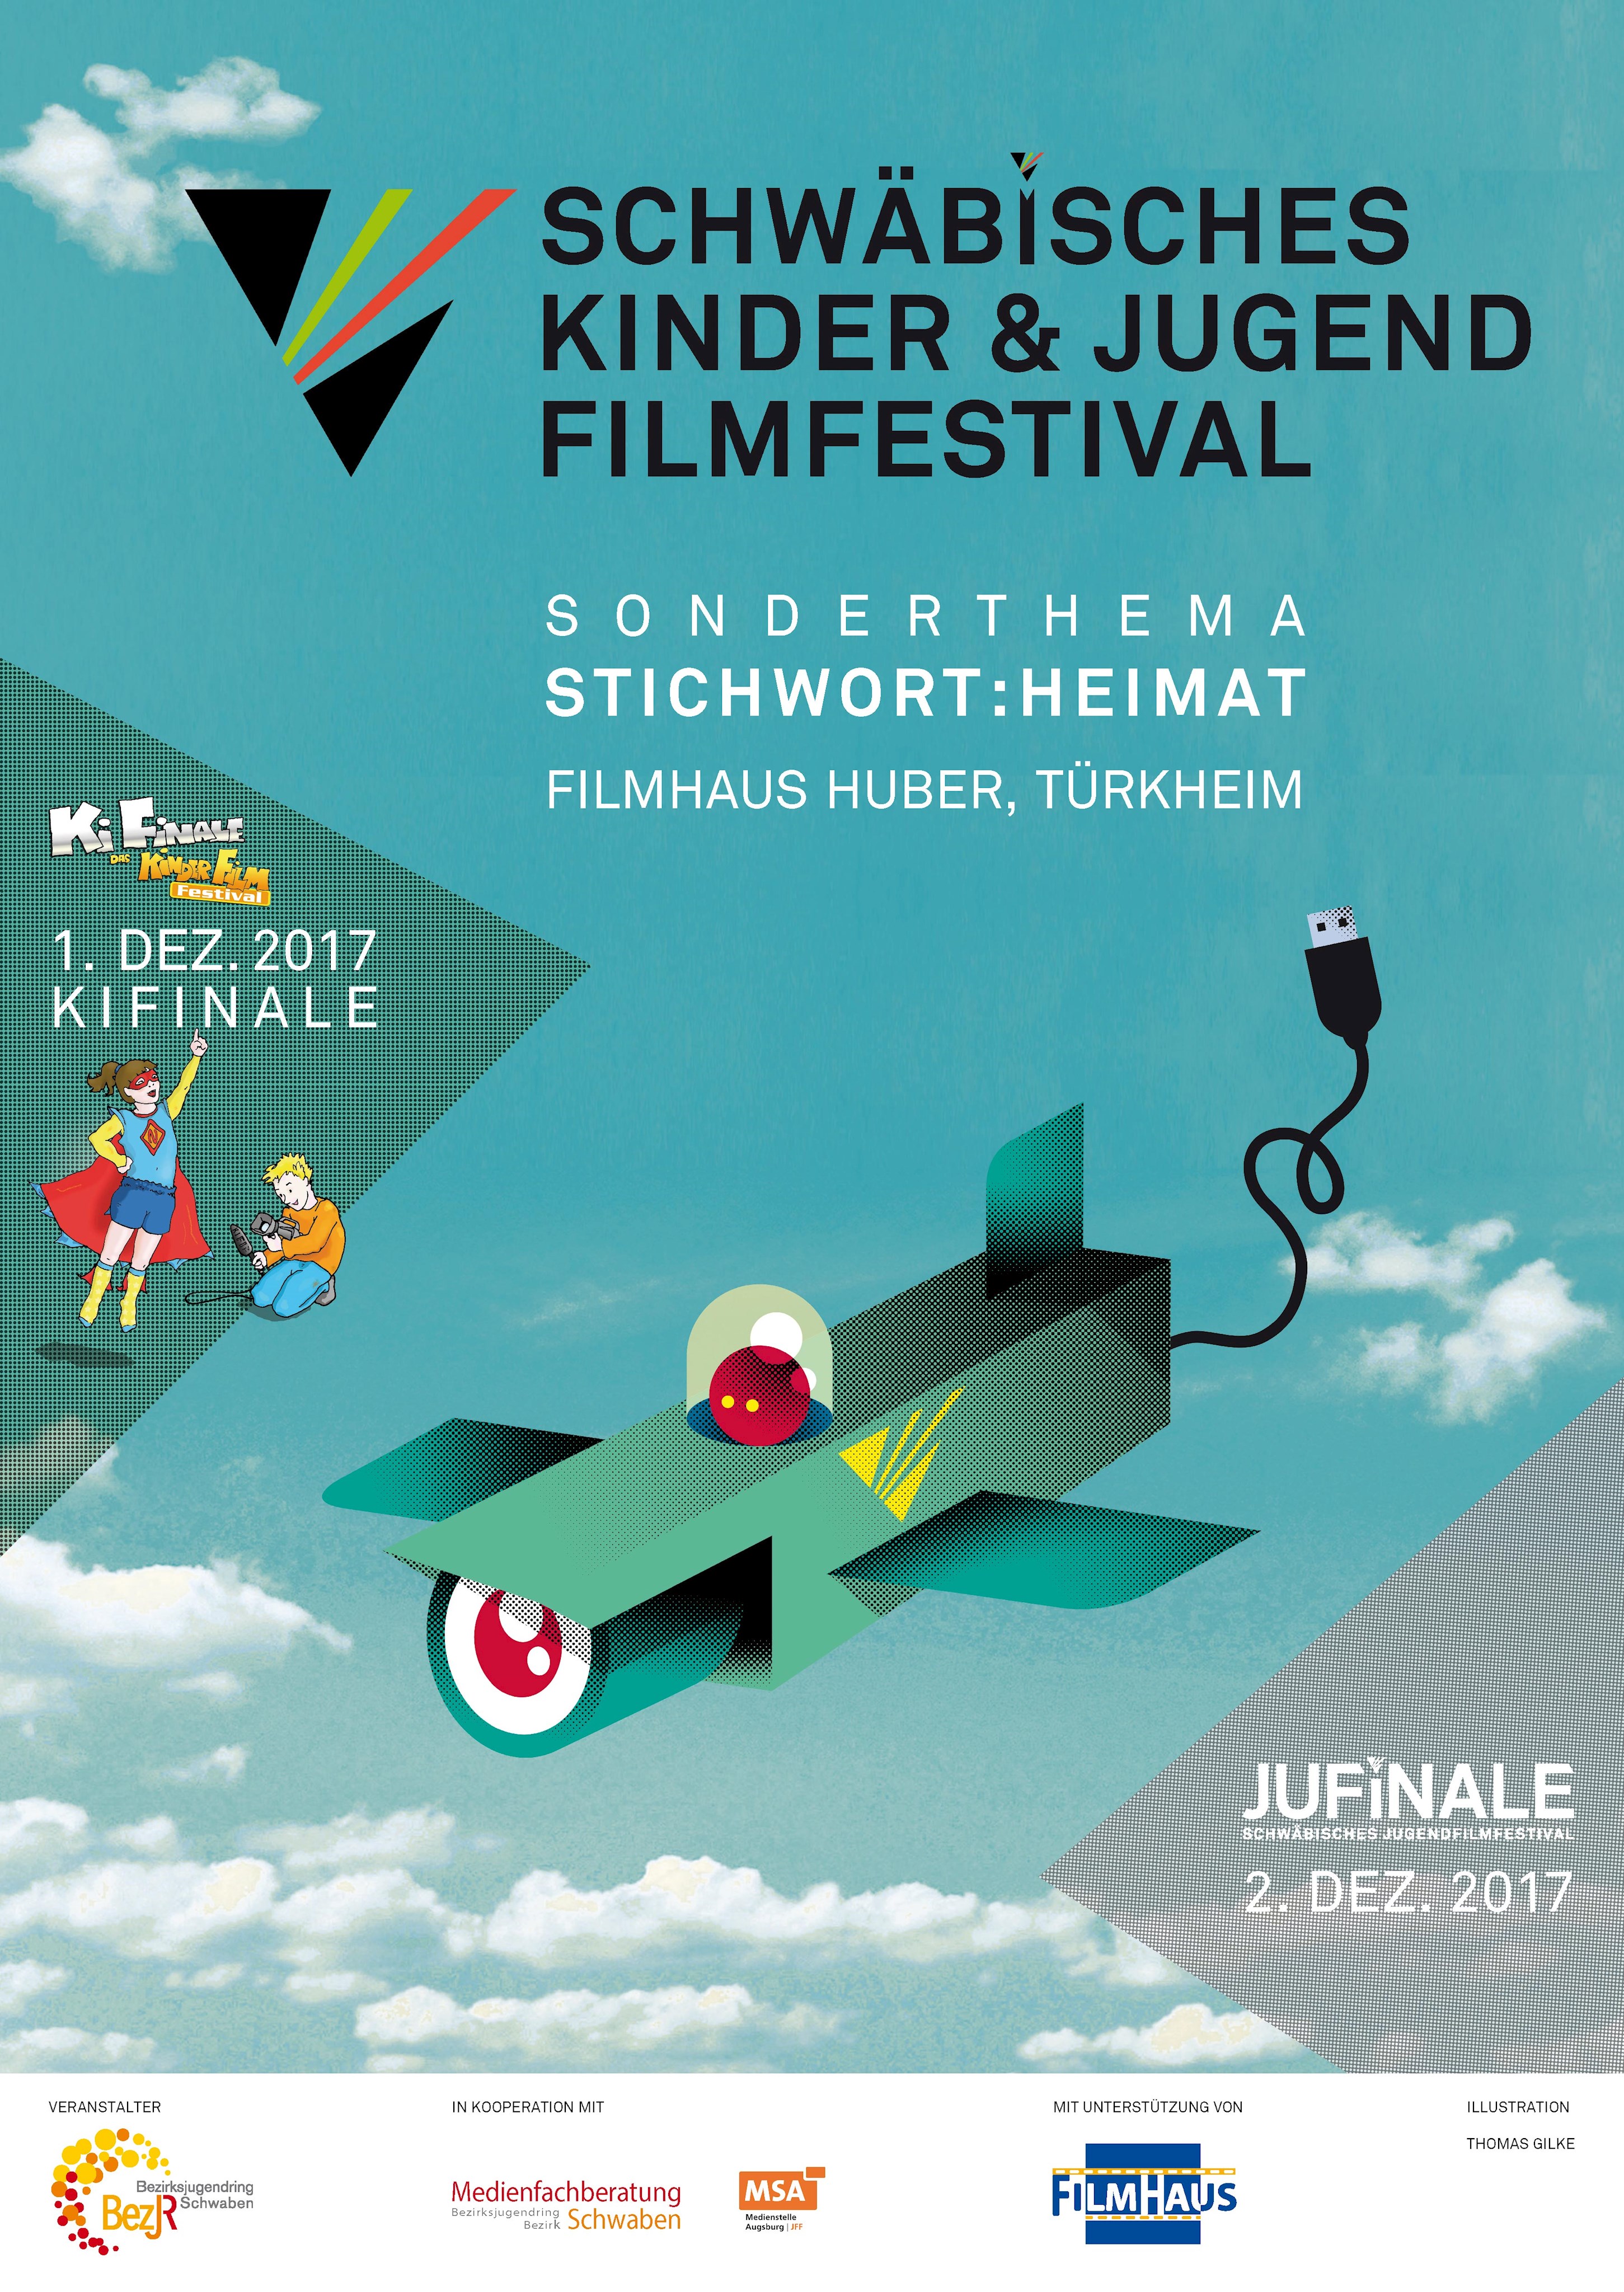 Plakat-Motiv des Schwäbischen Kinder & Jugend Filmfestivals 2017: ein grünes Flugzeug vor blauem Himmel, darüber das Logo des Festivals